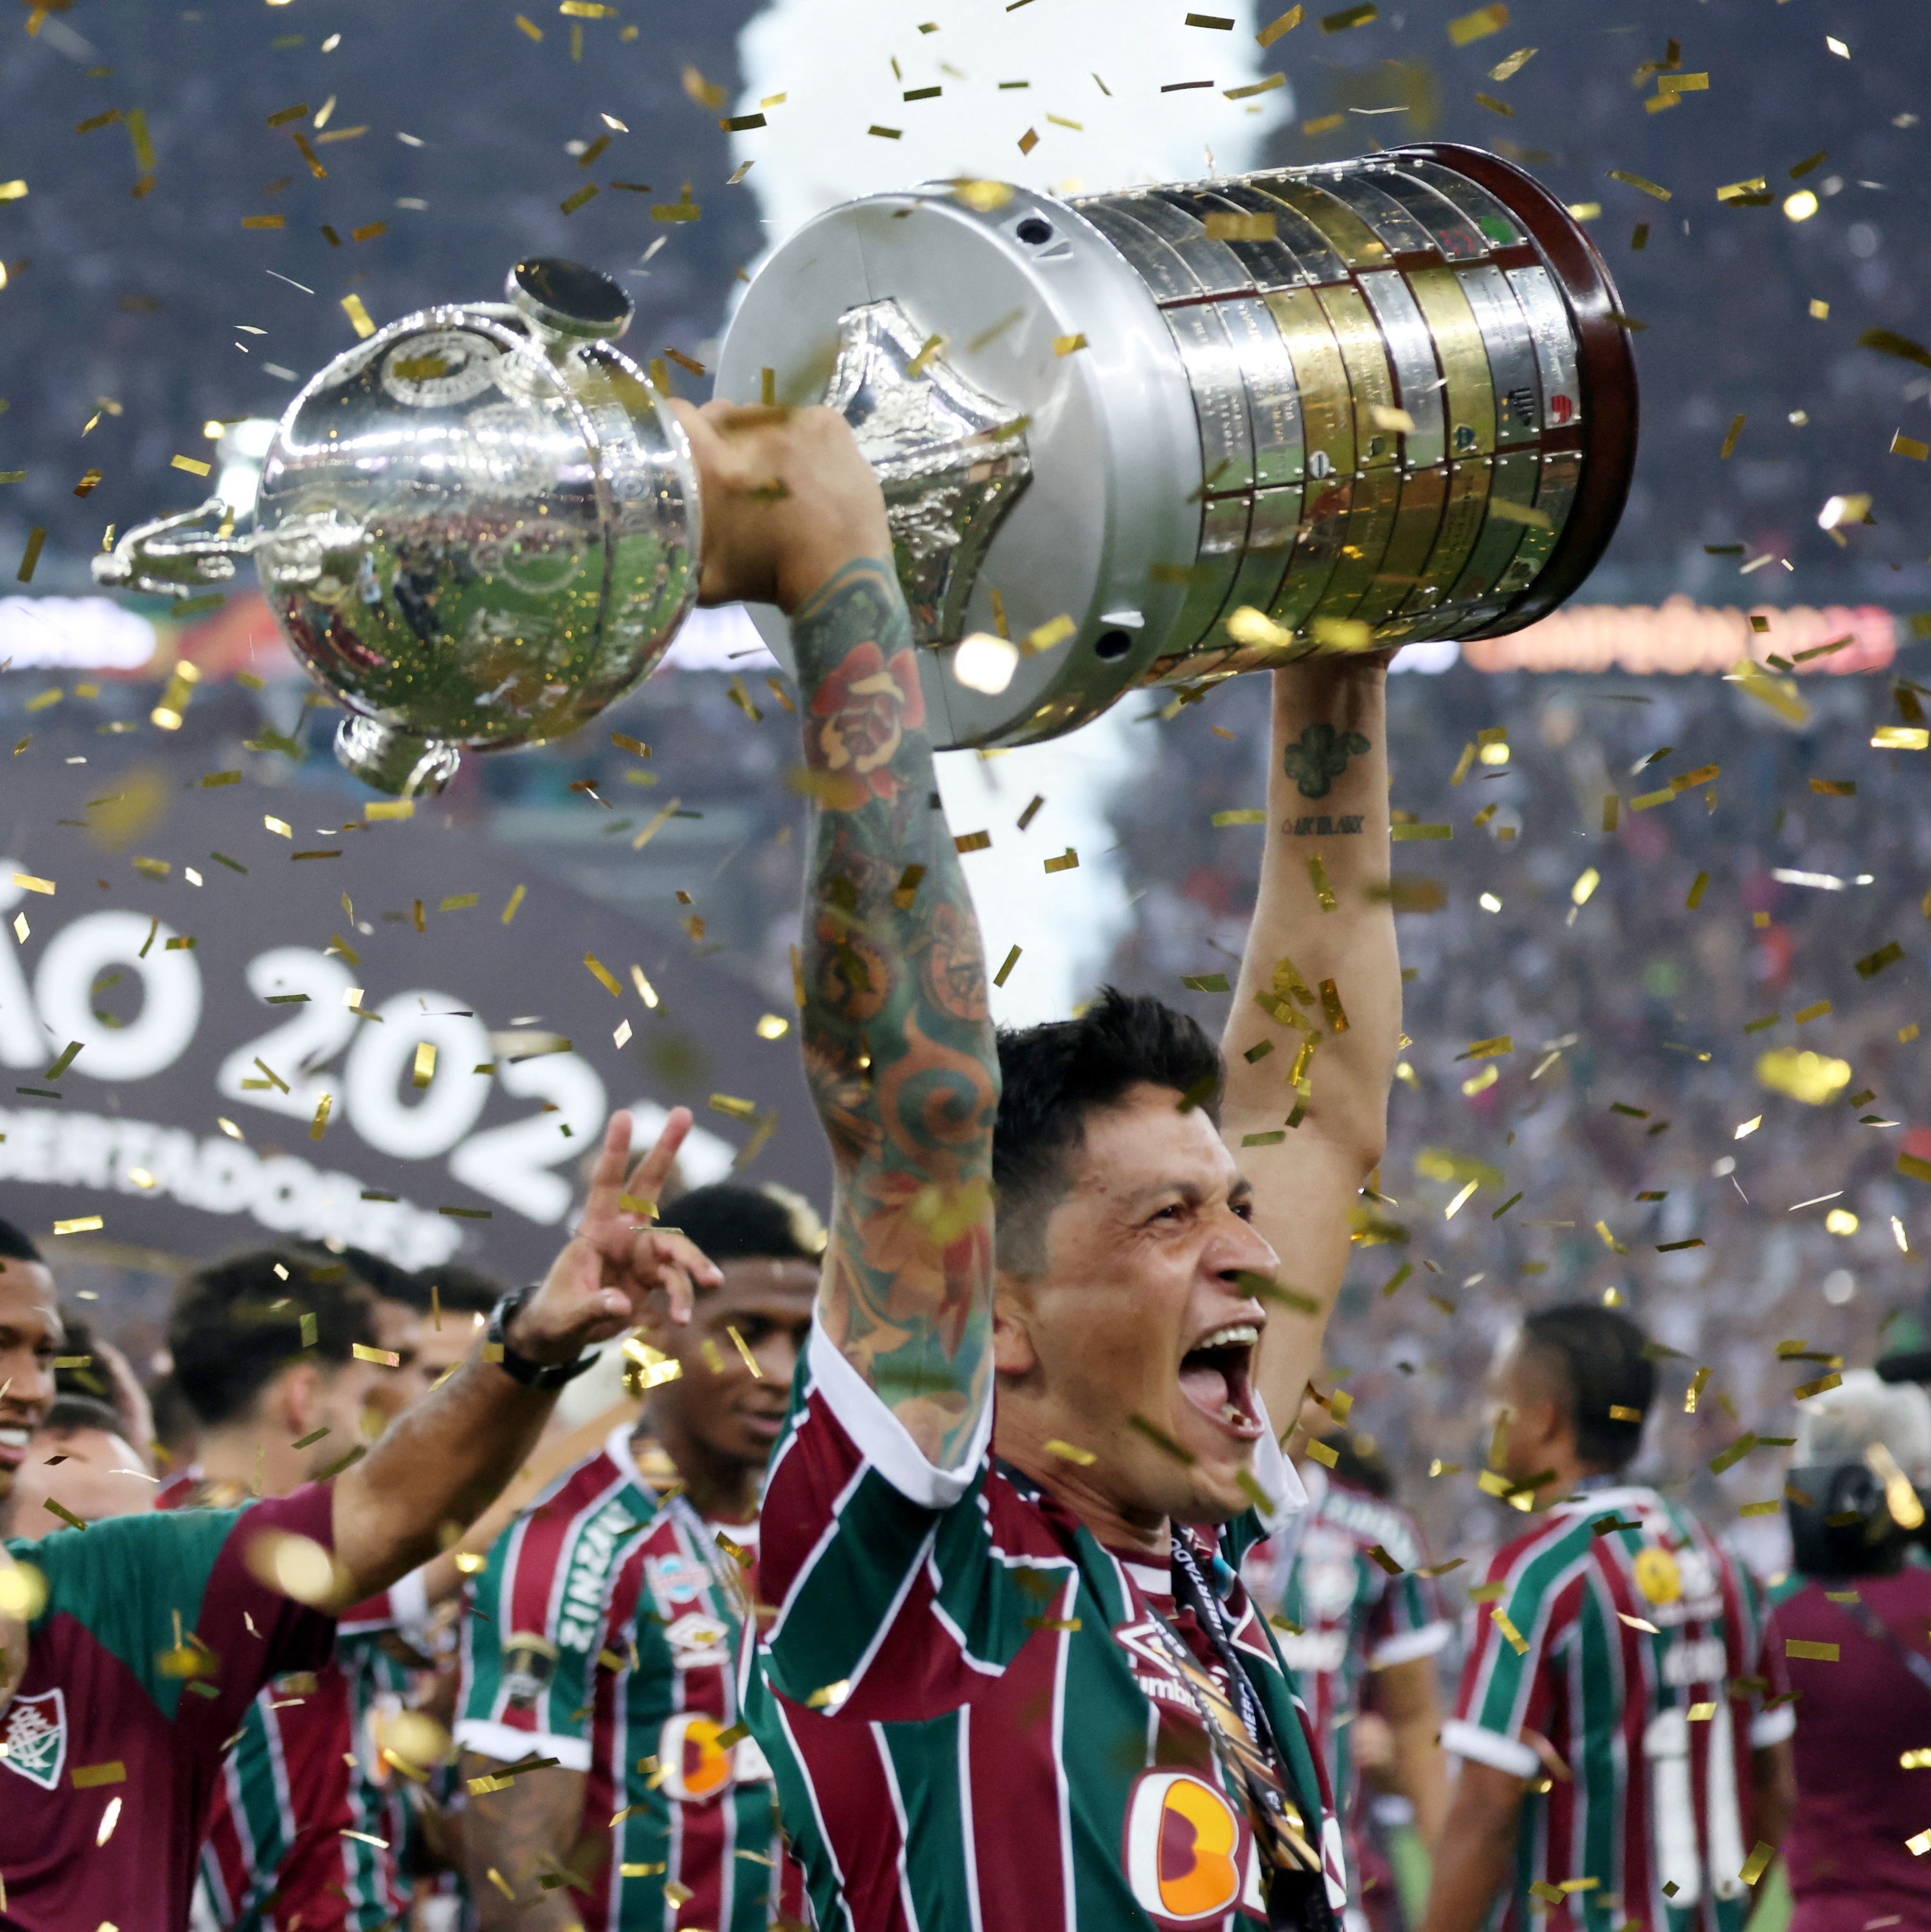 O Fluminense já ganhou o Mundial de Clubes?